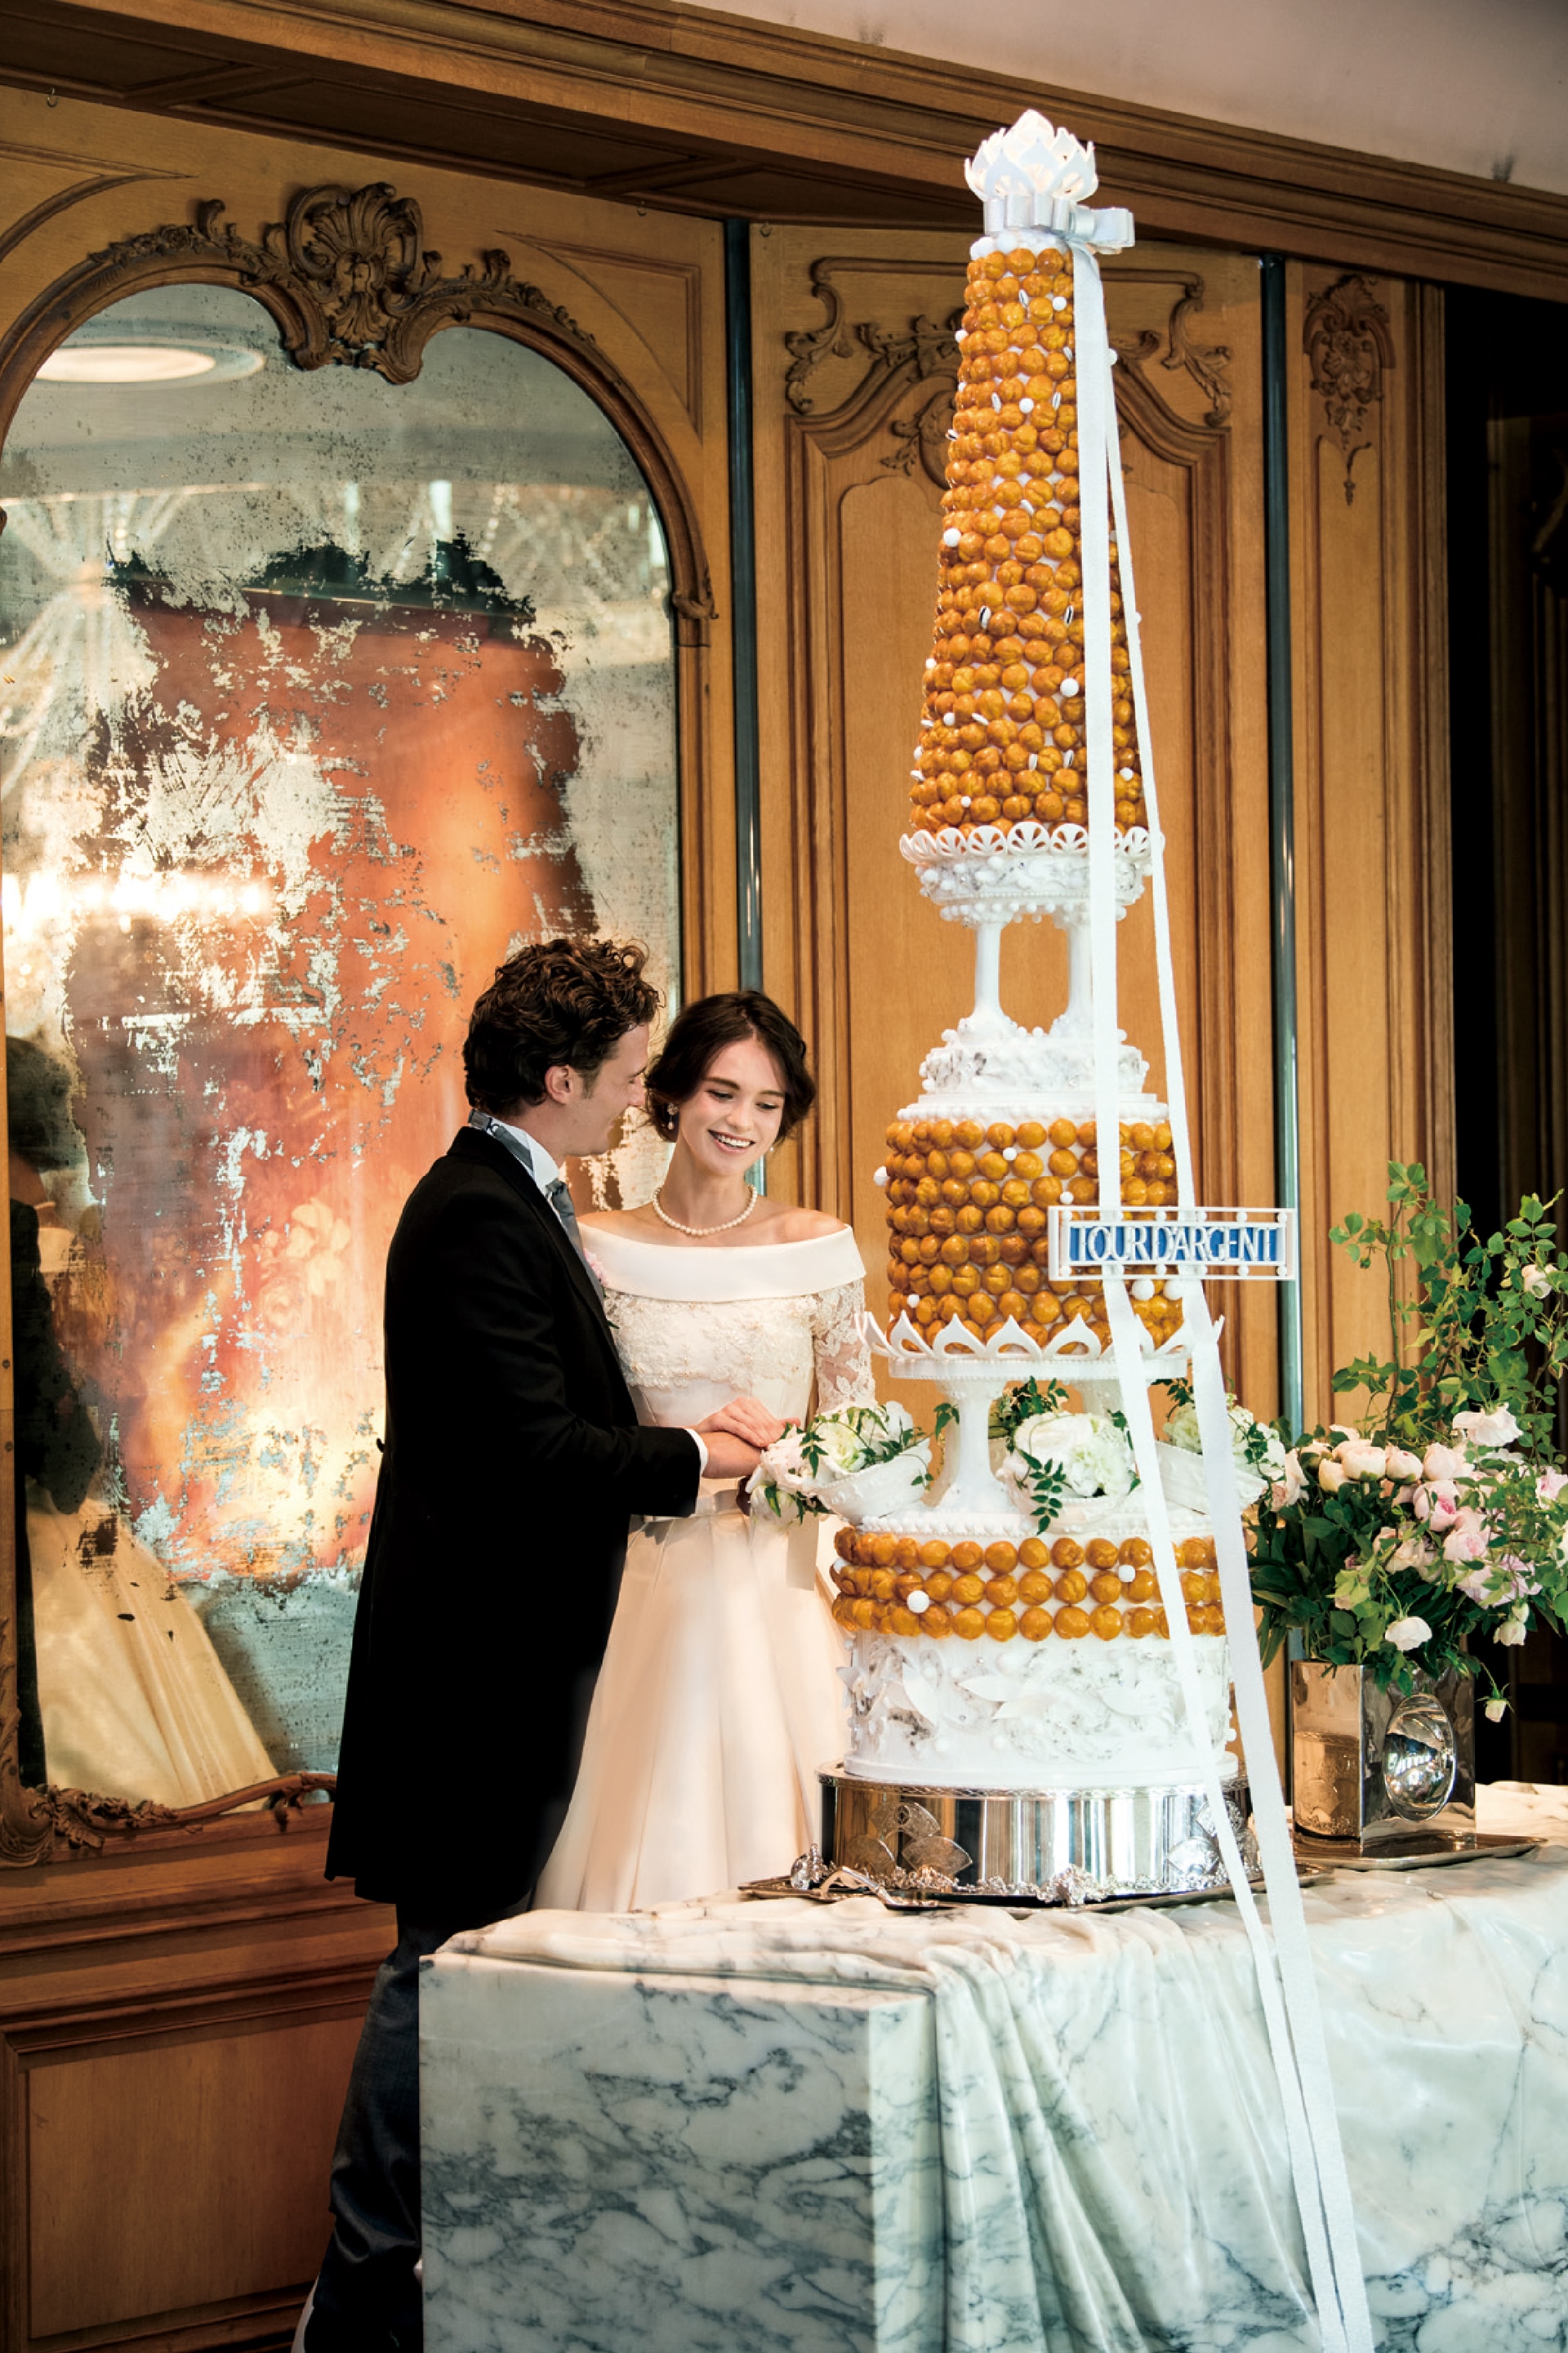 wedding cake and couple